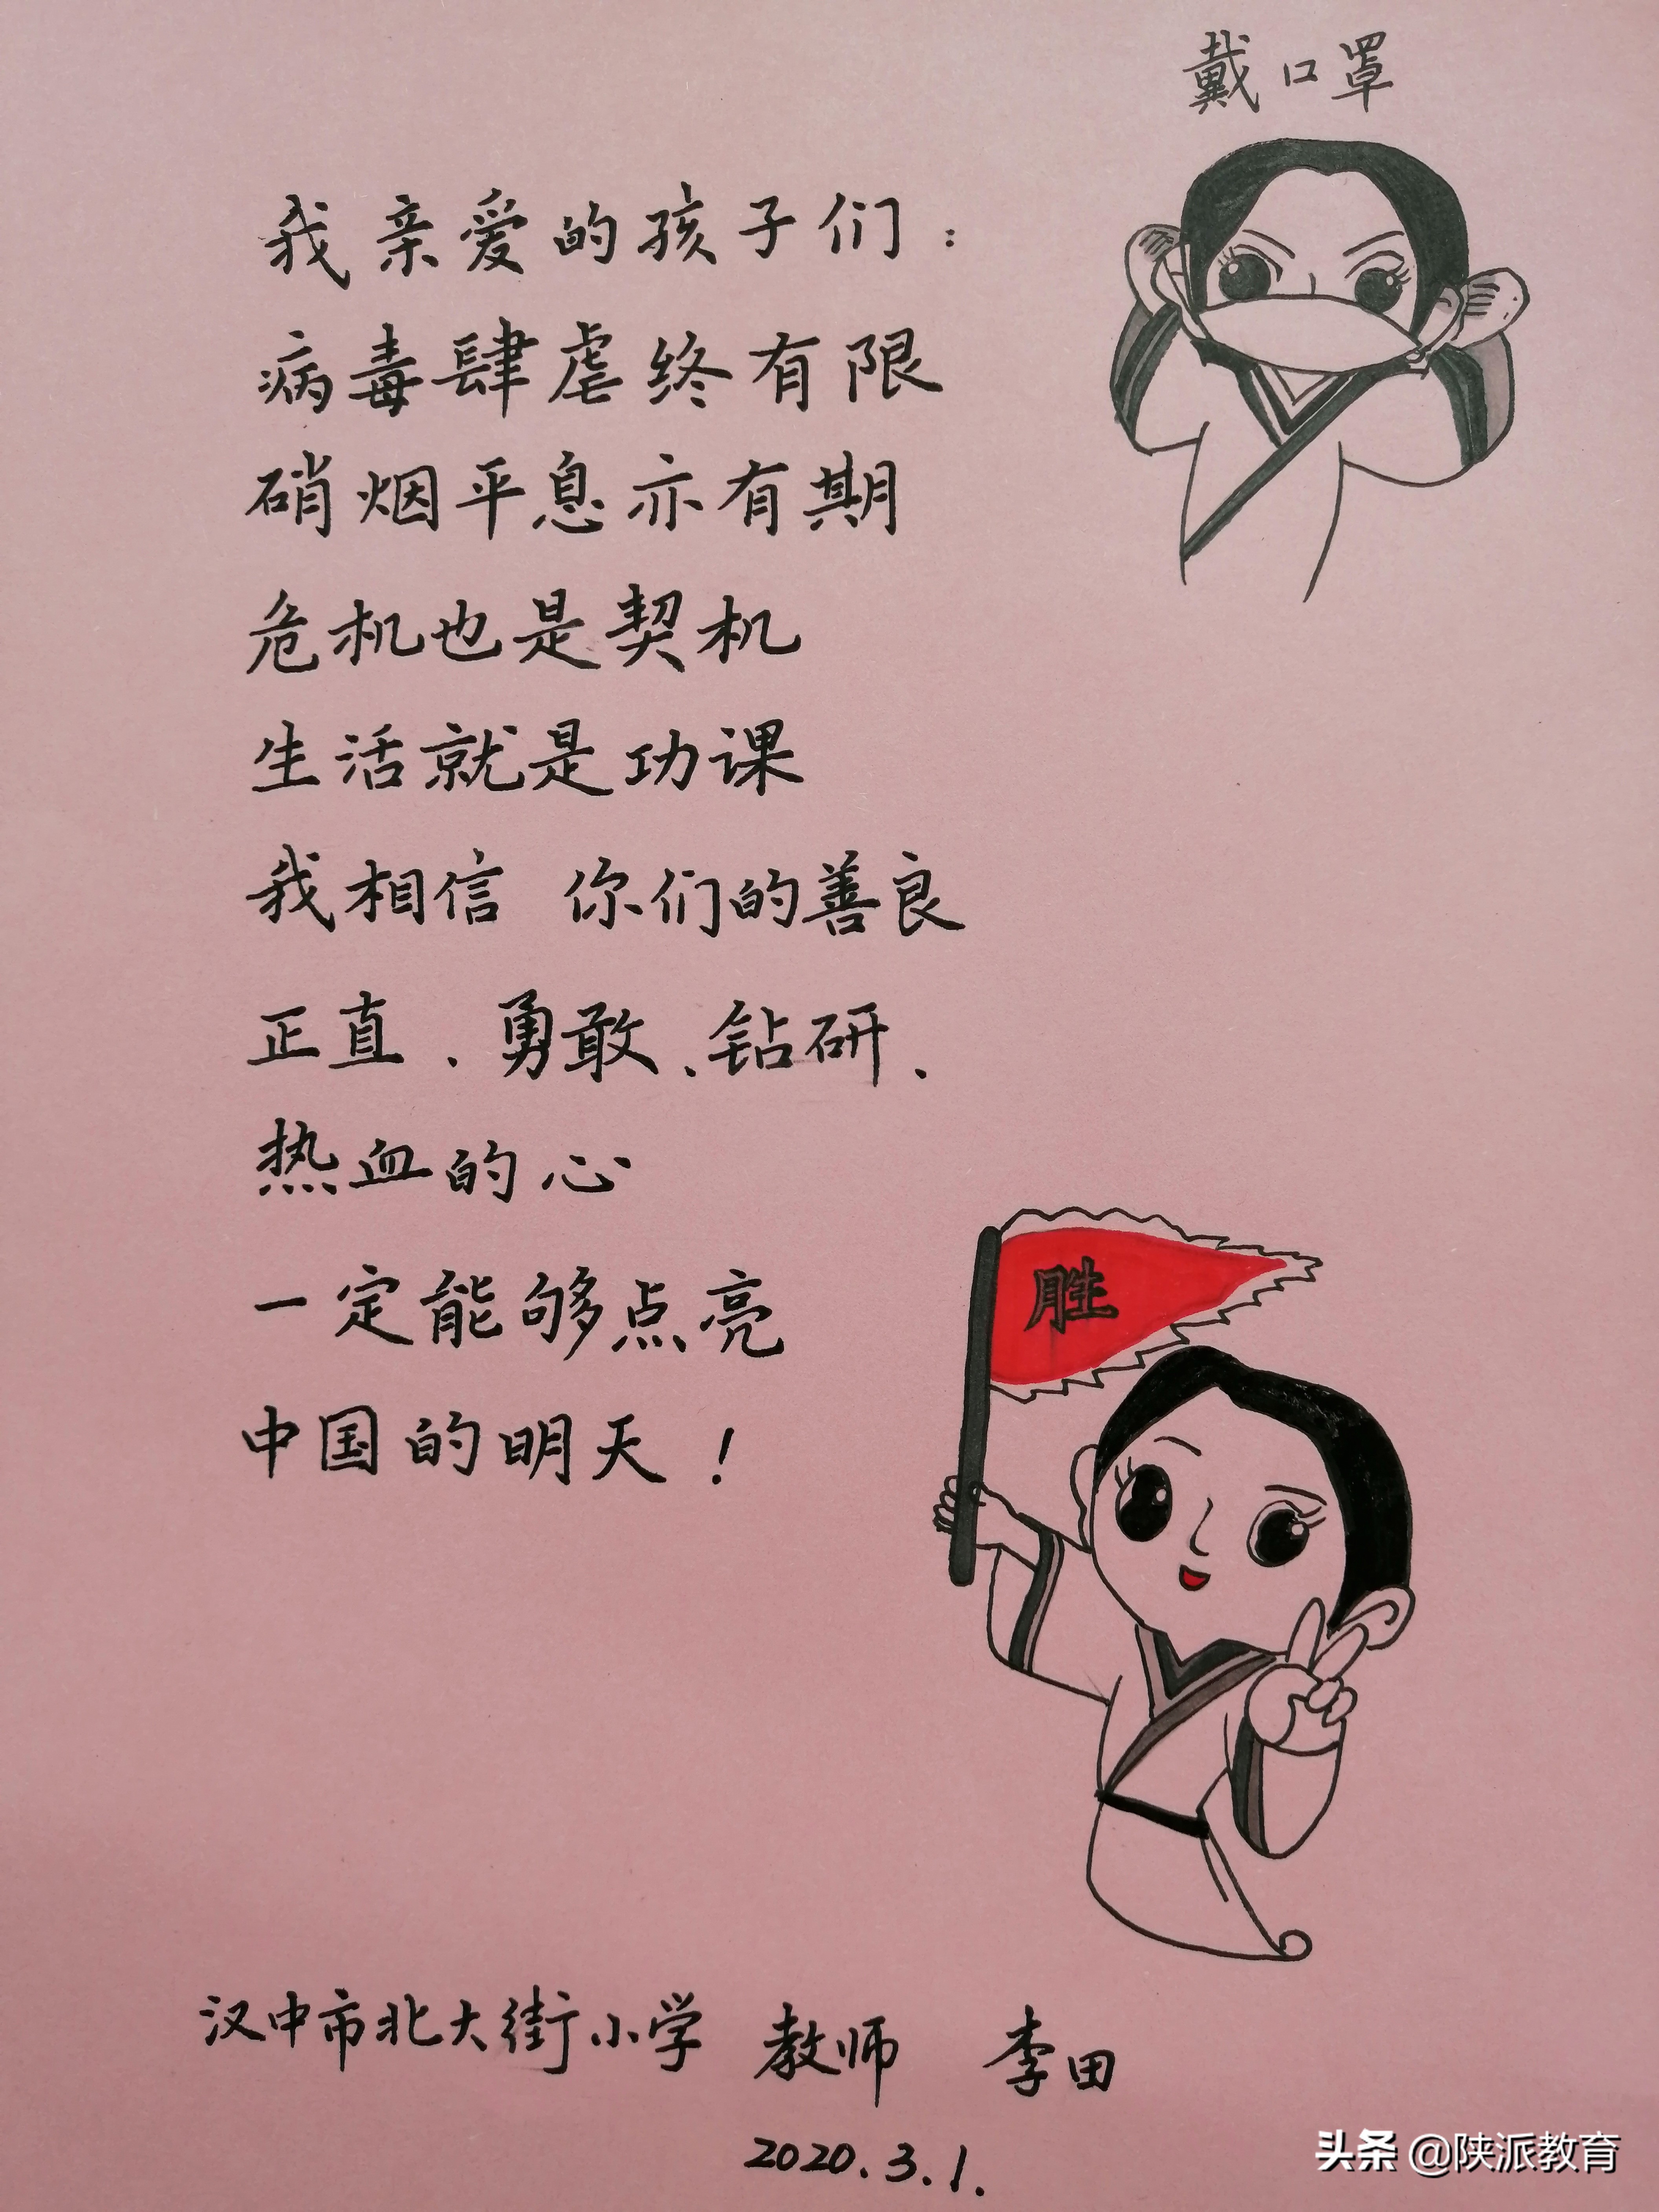 汉中市汉台区各校老师对学生们的温情寄语